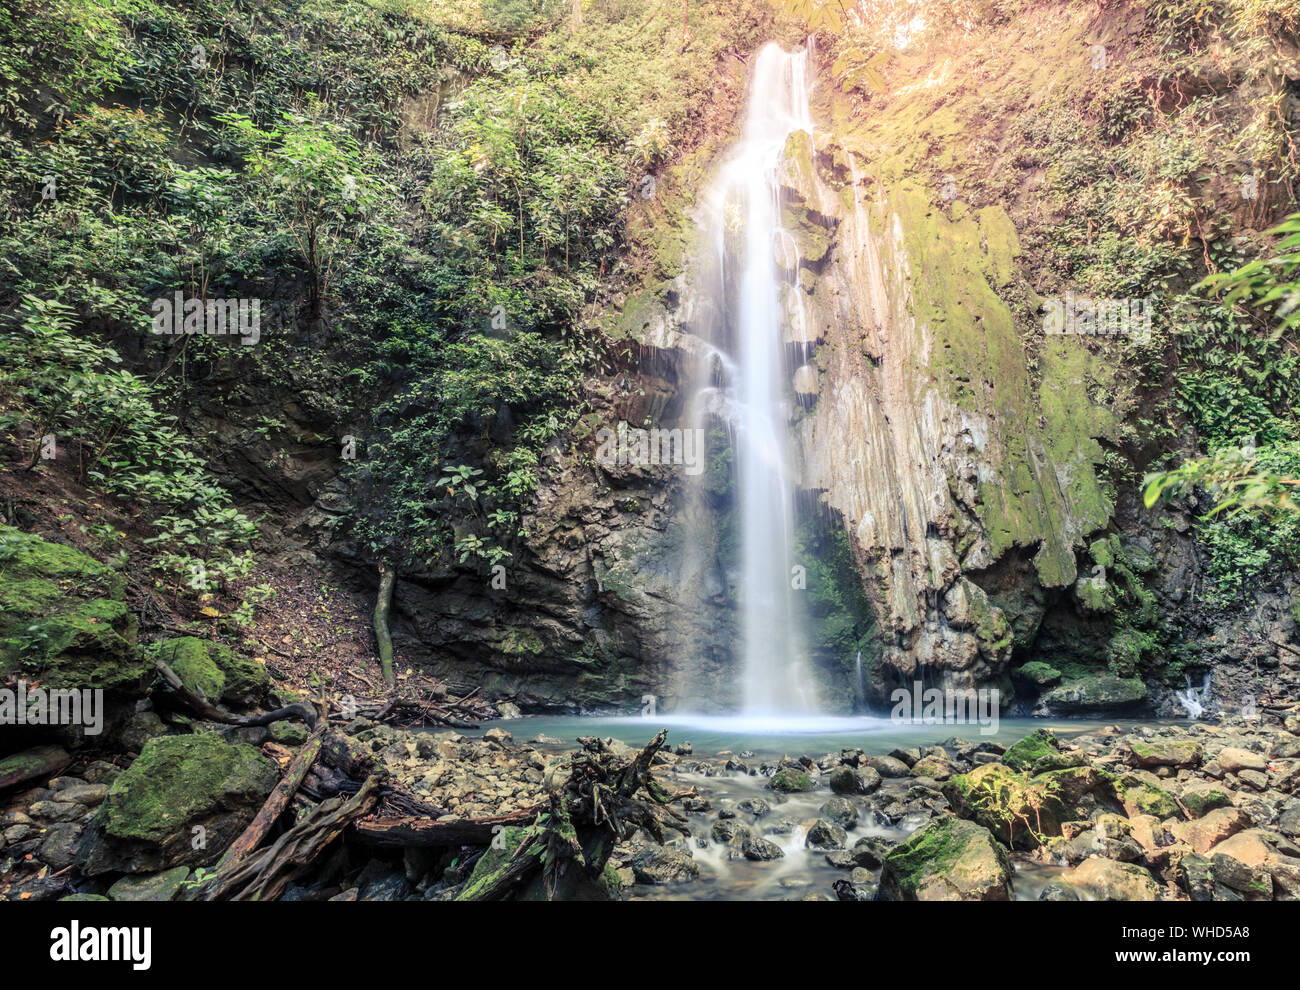 La catarata de la llorona waterfall in Corcovado National Park in Costa Rica Stock Photo